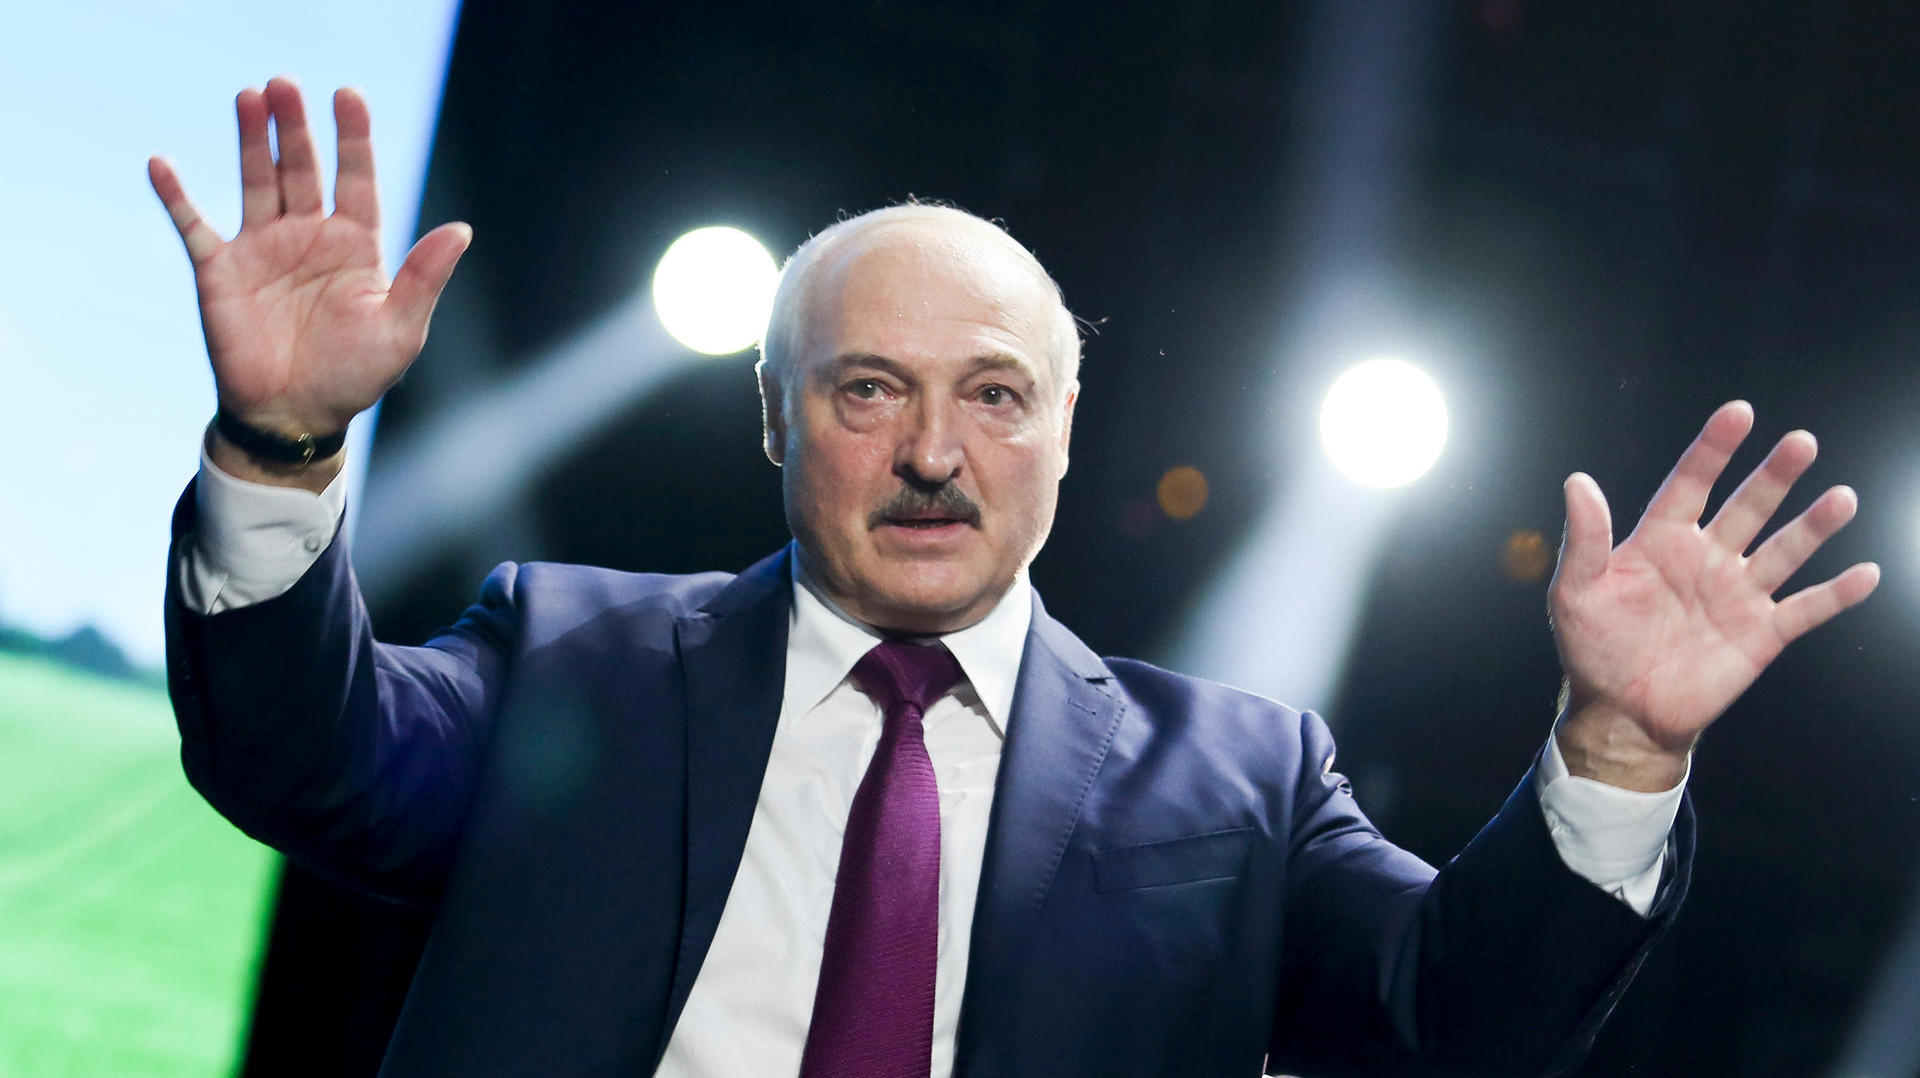 Angst durch Gewalt – Lukaschenkos Plan geht nicht auf